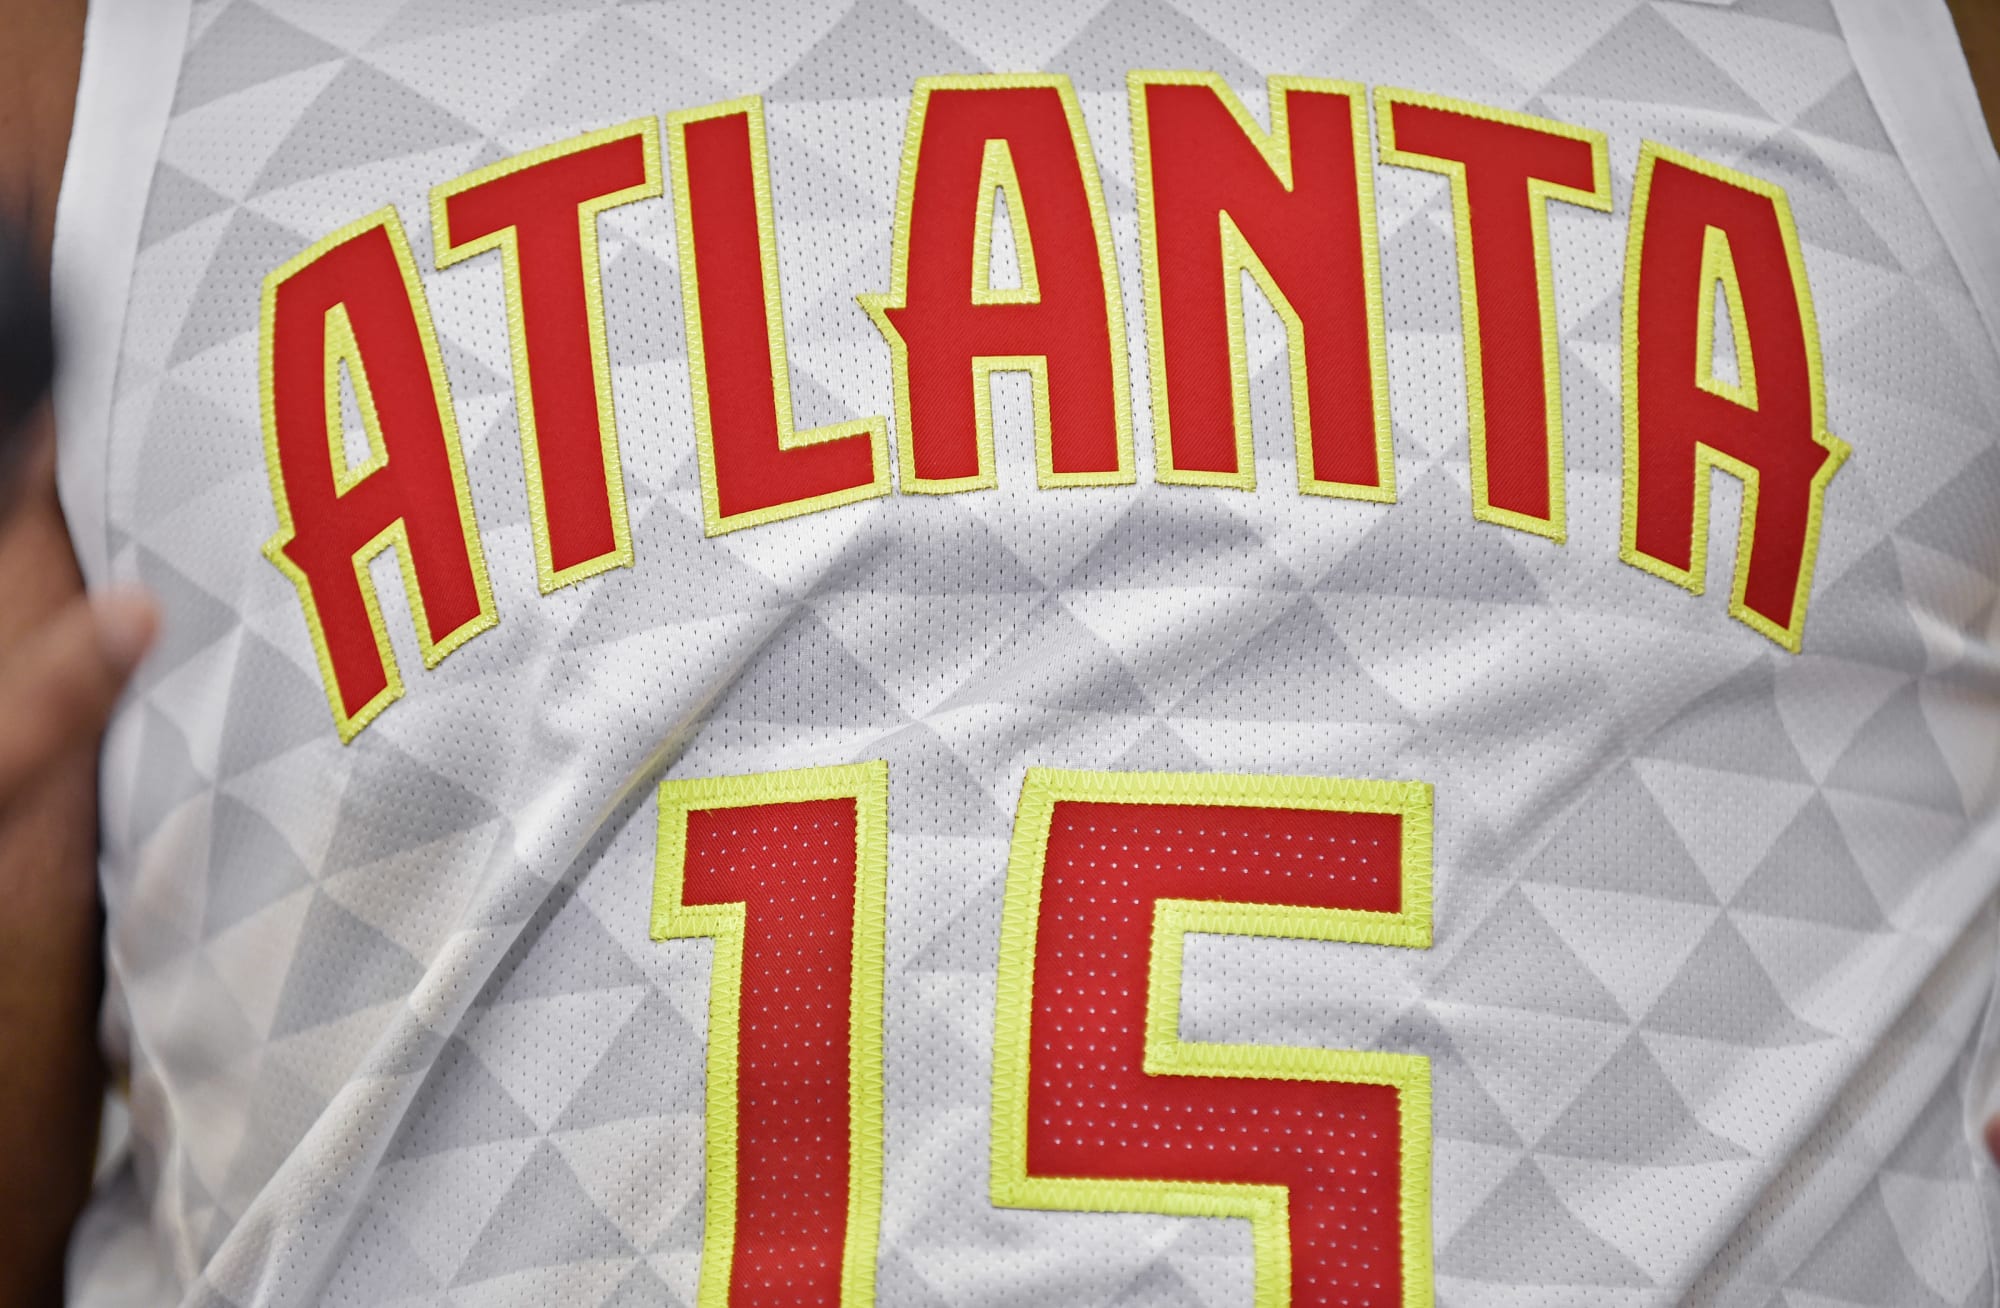 Atlanta Hawks 2019-20 City Edition 'Peachtree' Jersey : r/AtlantaHawks